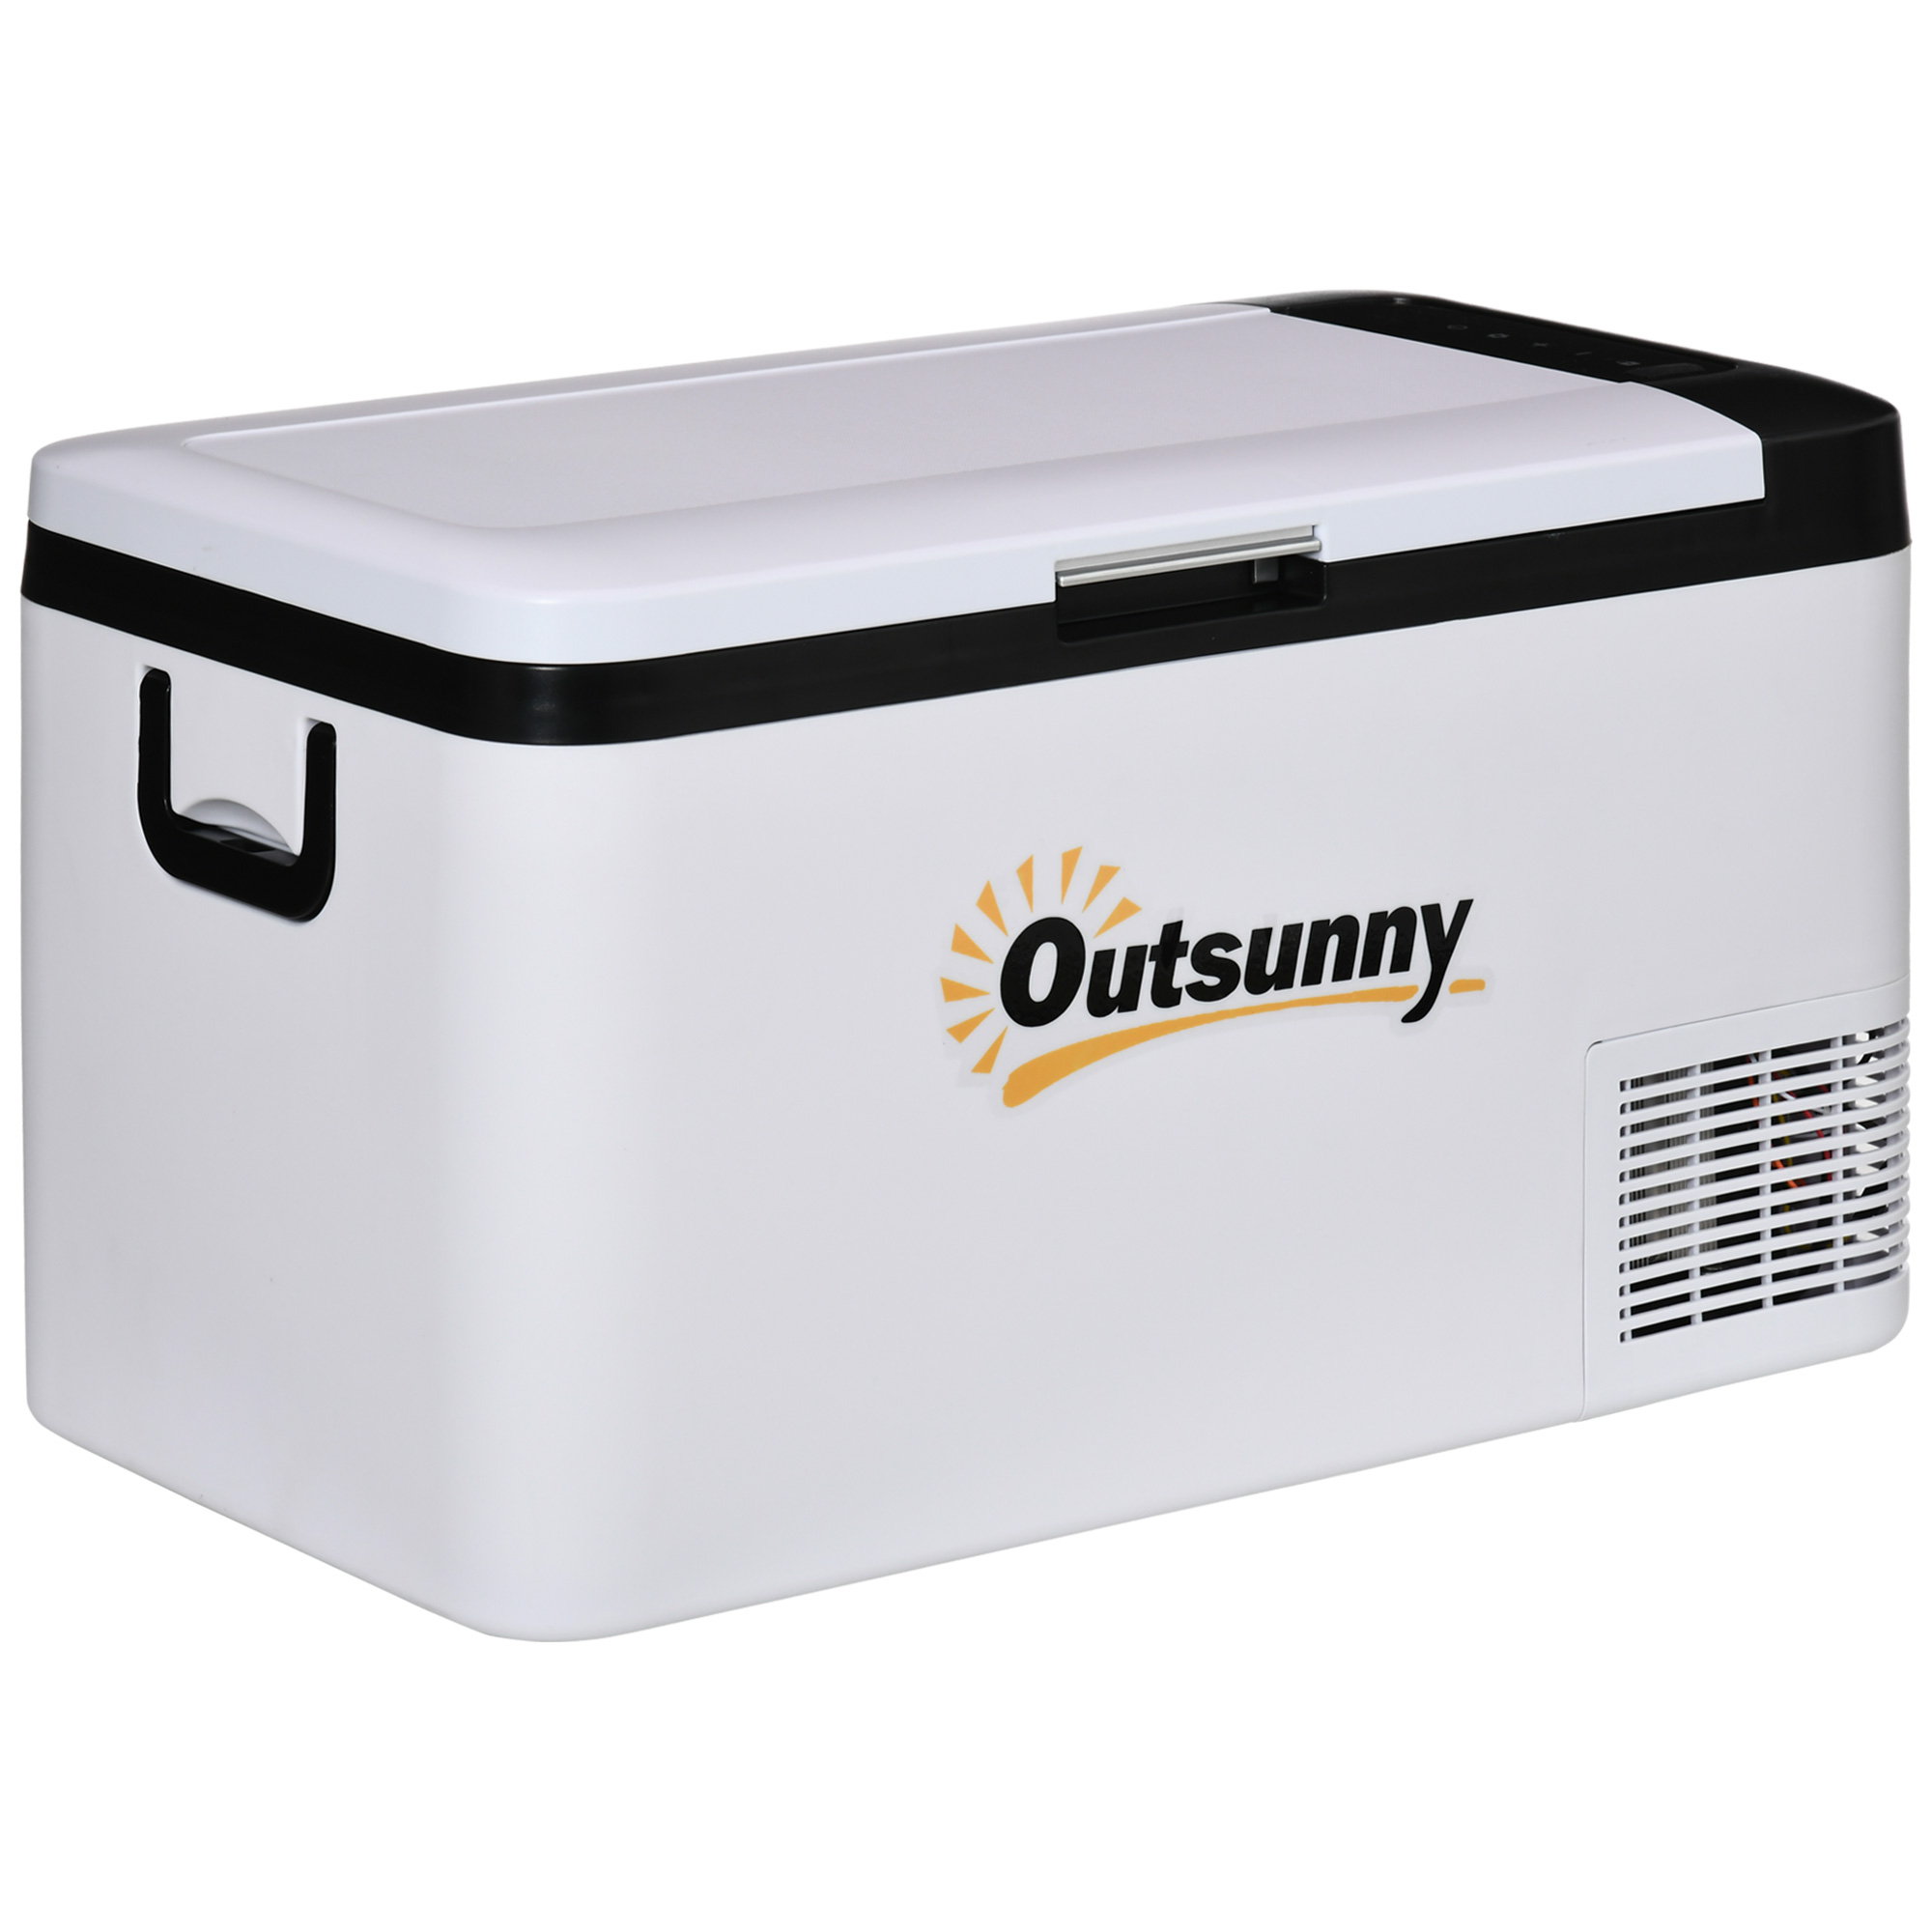 Outsunny 12v Car Refrigerator W/ Led Light & Foldable Handles, 25l Portable Compressor Cooler, Fridge Freezer For Campervan Rv Boat Travel